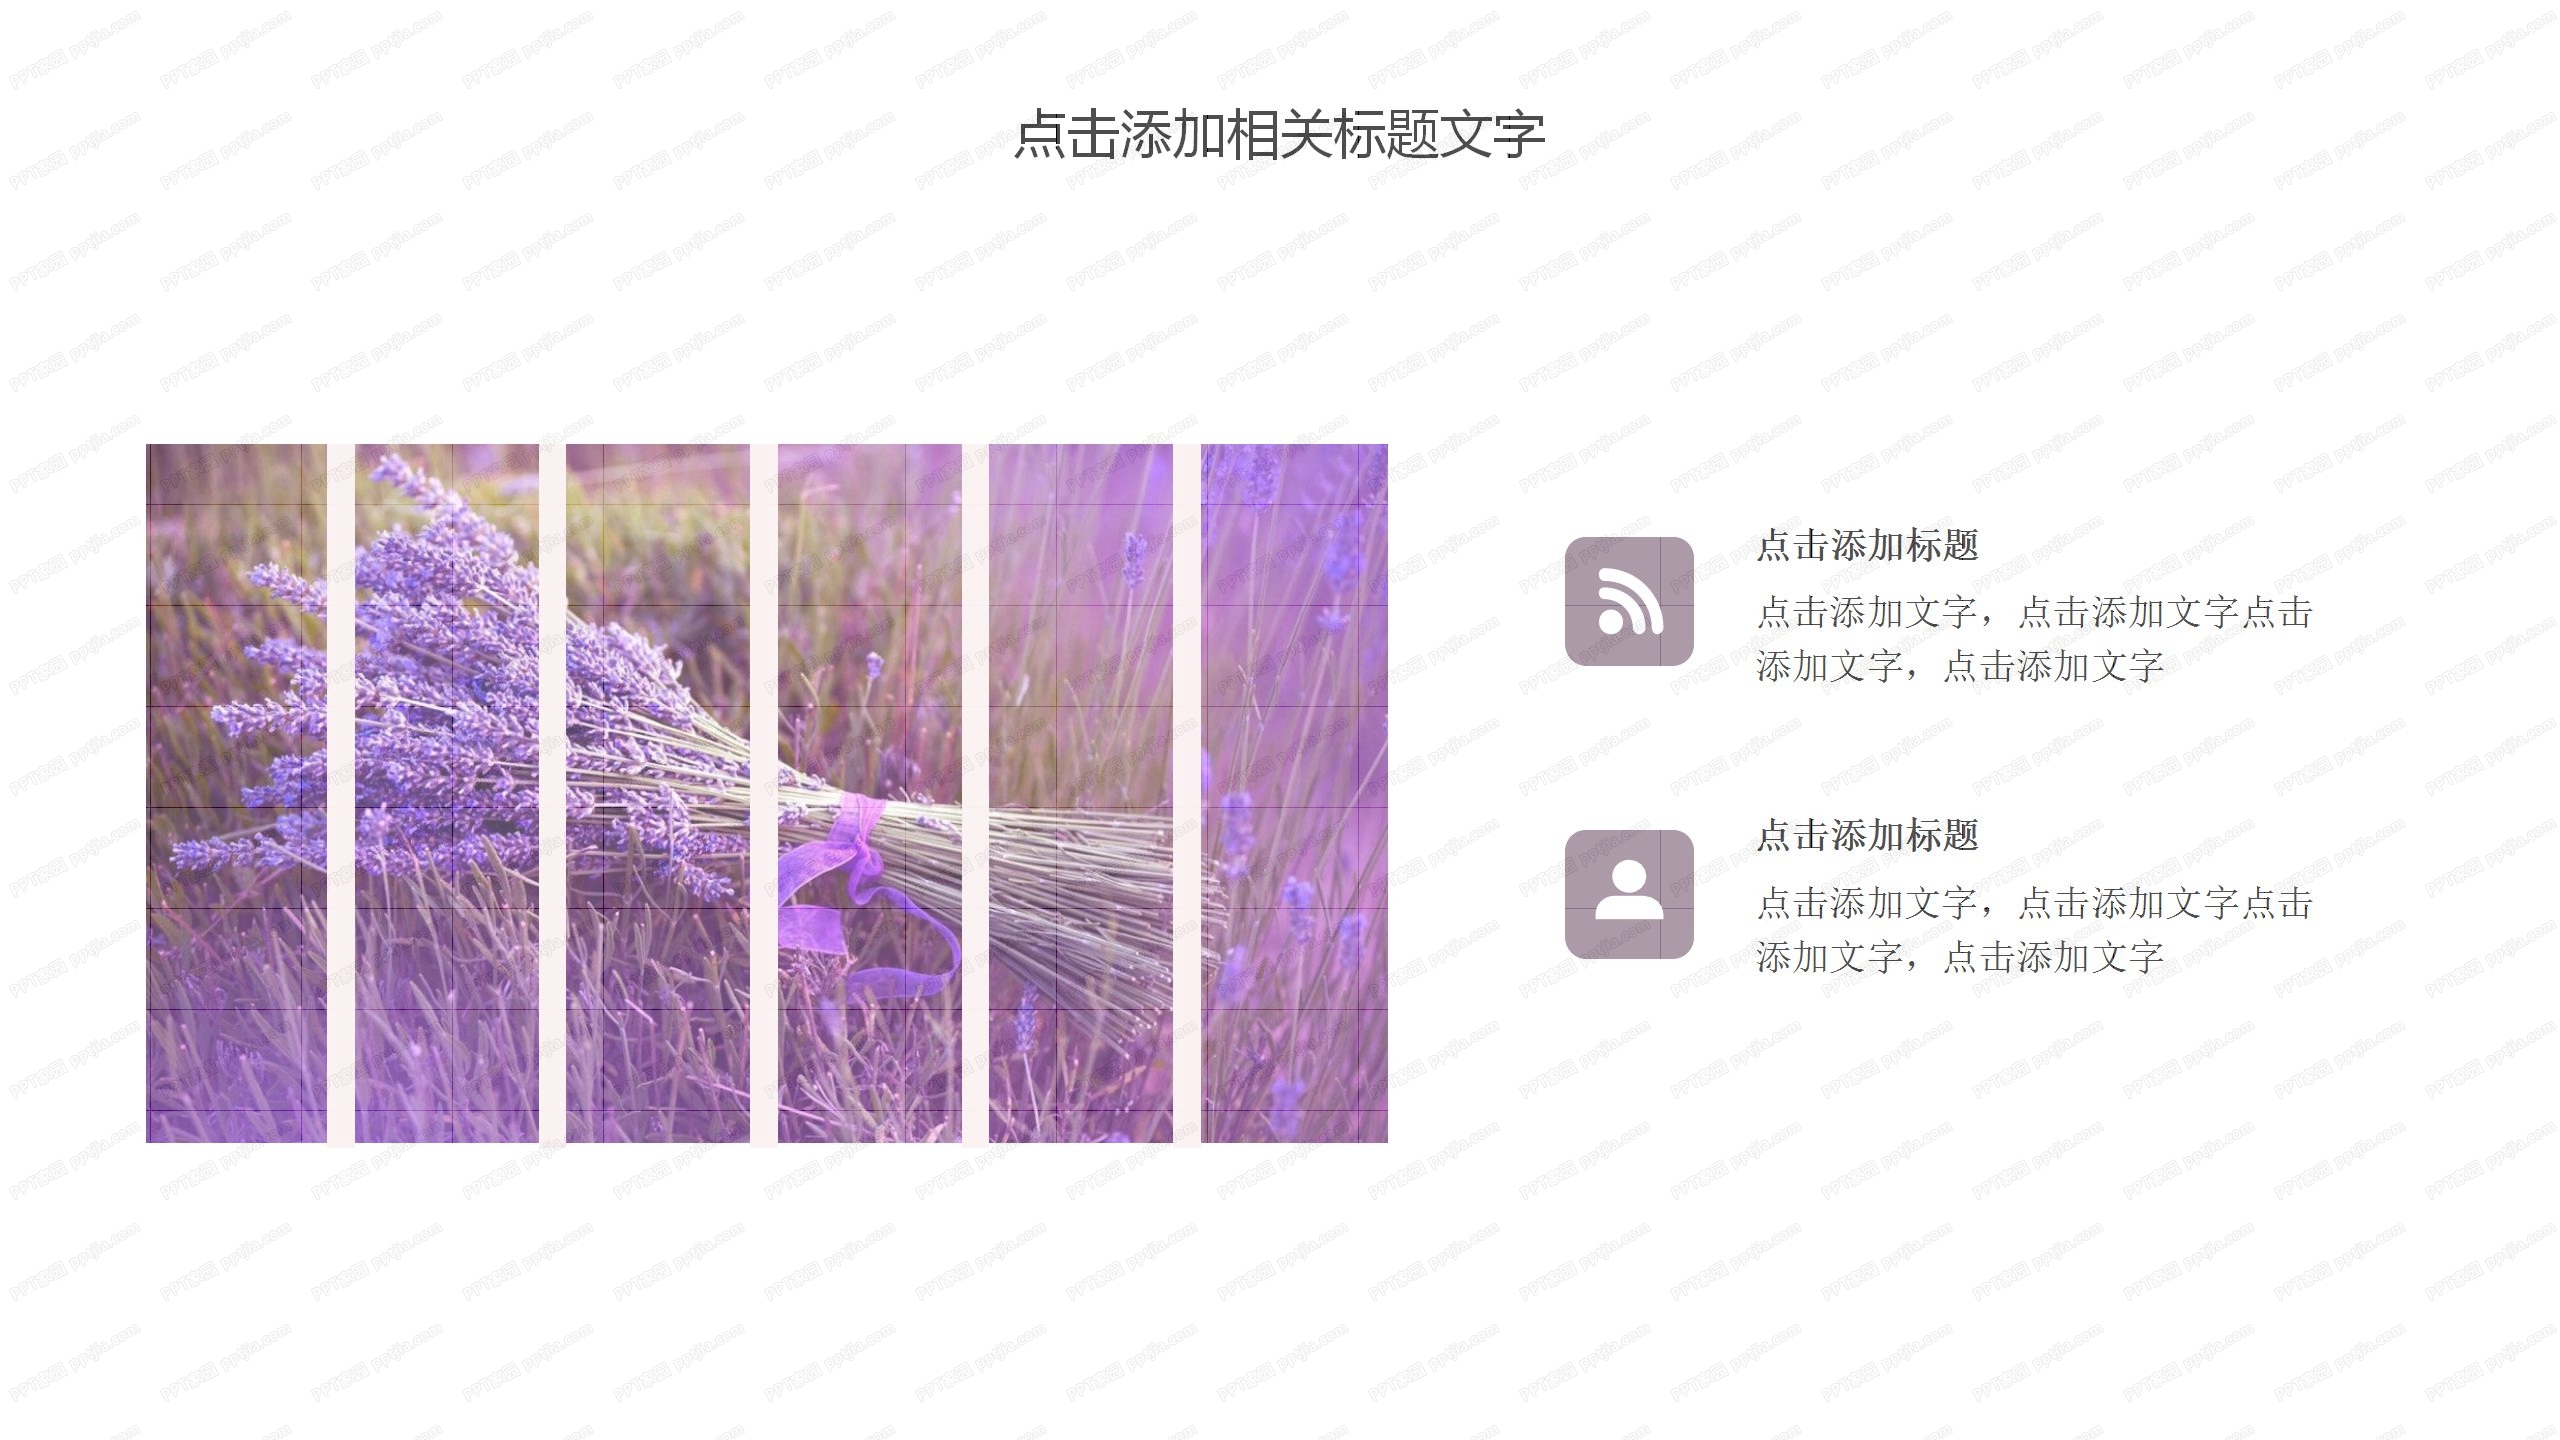 紫色企业文化新年宣传ppt模板